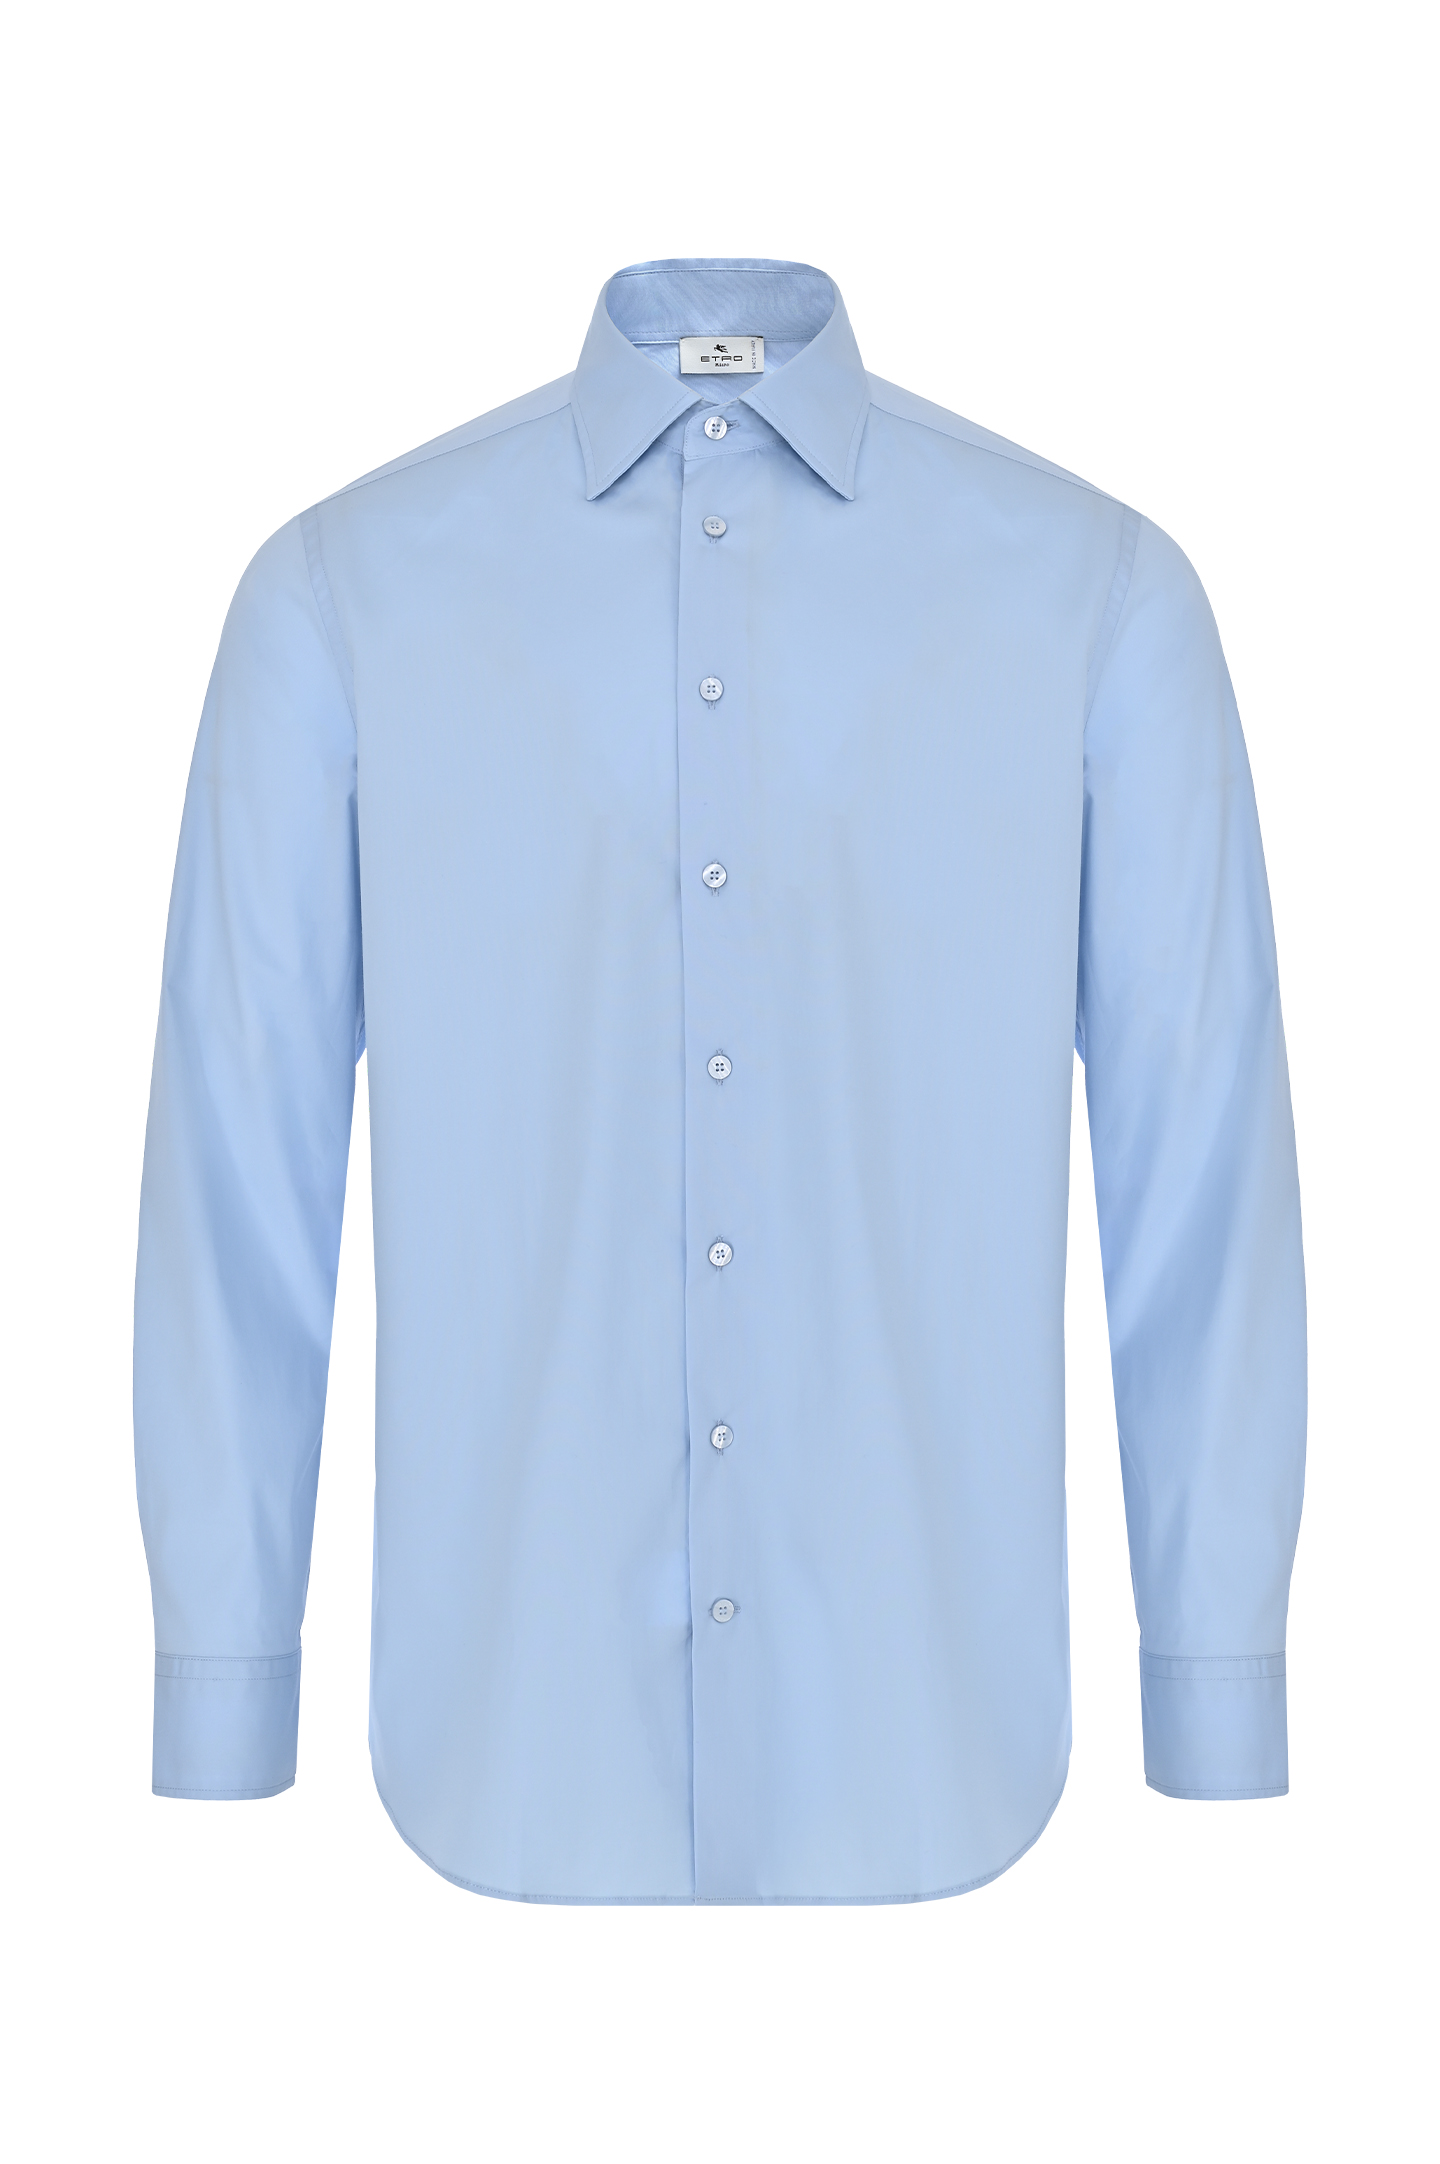 Рубашка из хлопка и эластана ETRO MRIB0001 AV202, цвет: Голубой, Мужской